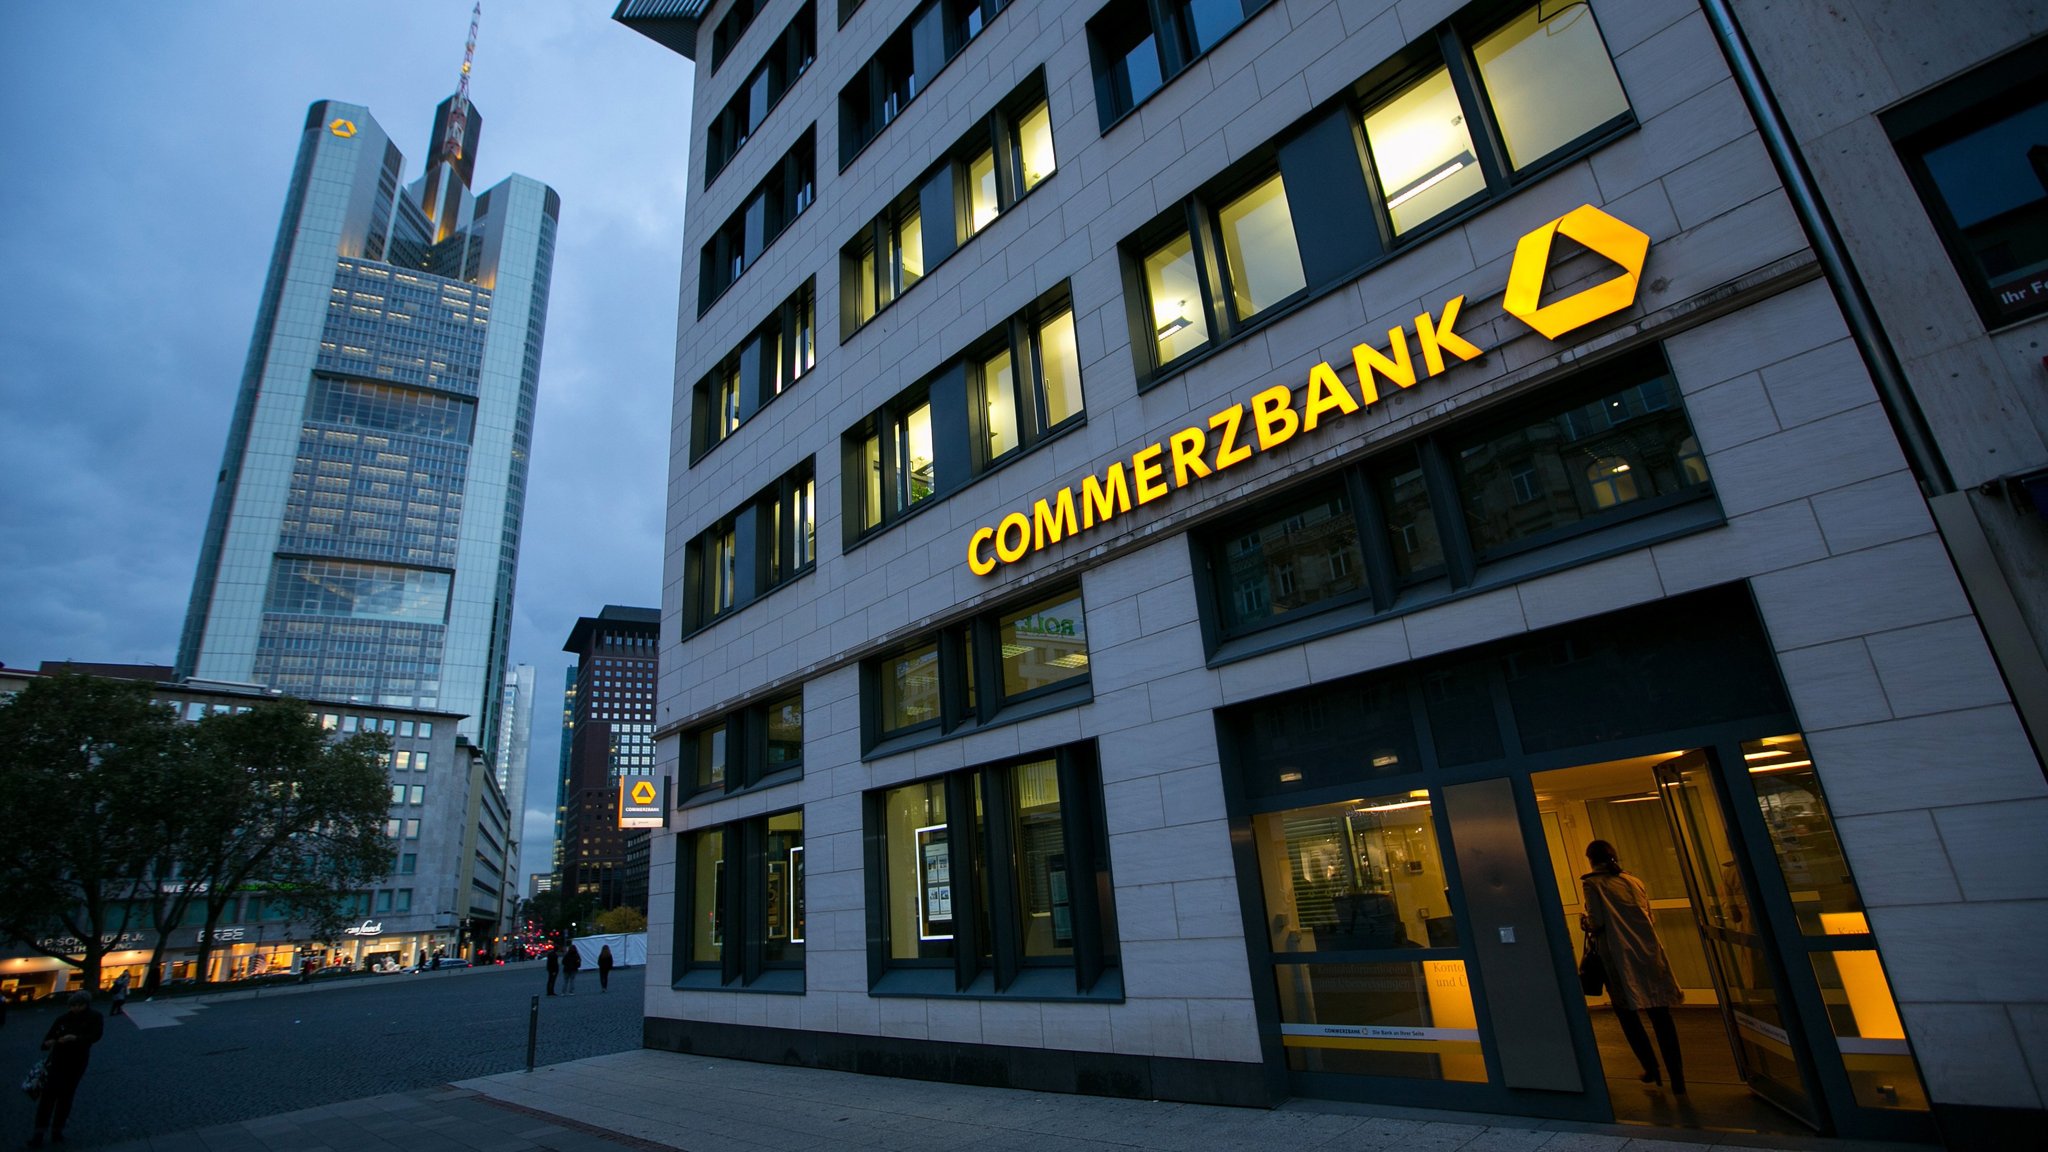 حقوق مدیرعامل کامرز بانک آلمان: ۱.۹۷ میلیون یورو/ حقوق مدیرعامل دویچه‌بانک: ۷ میلیون یورو!